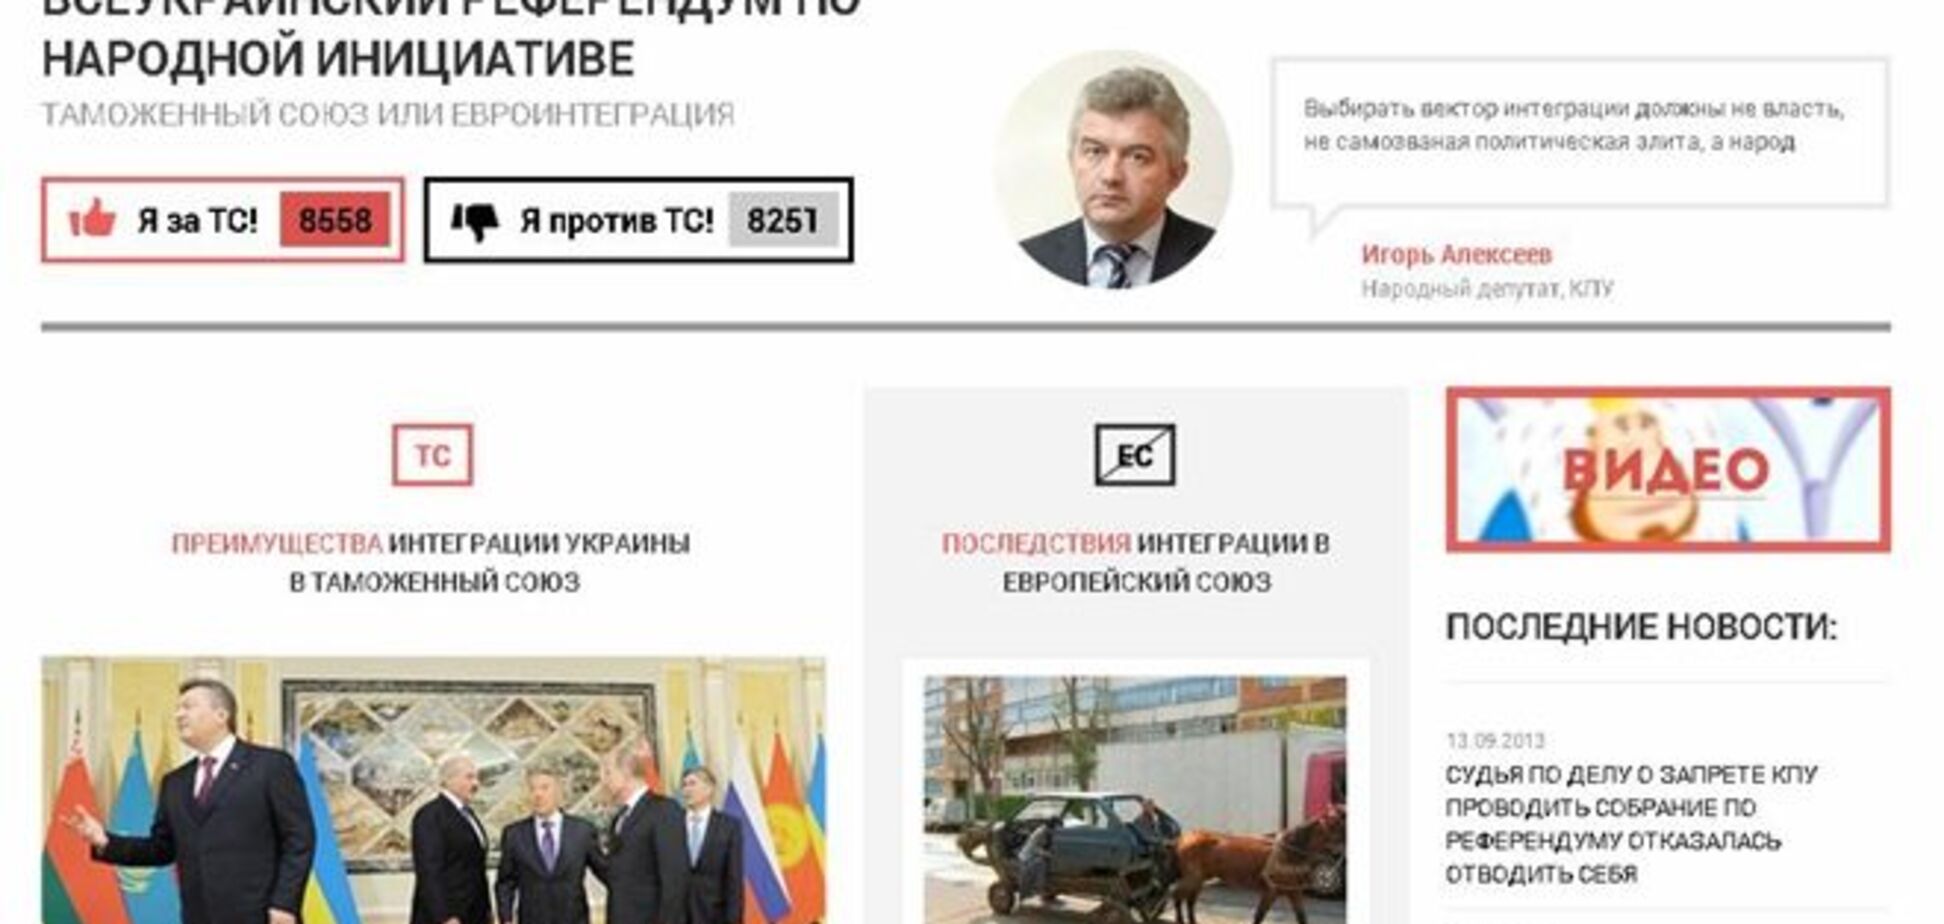 КПУ запустила онлайн-референдум по вступлению в Таможенный союз